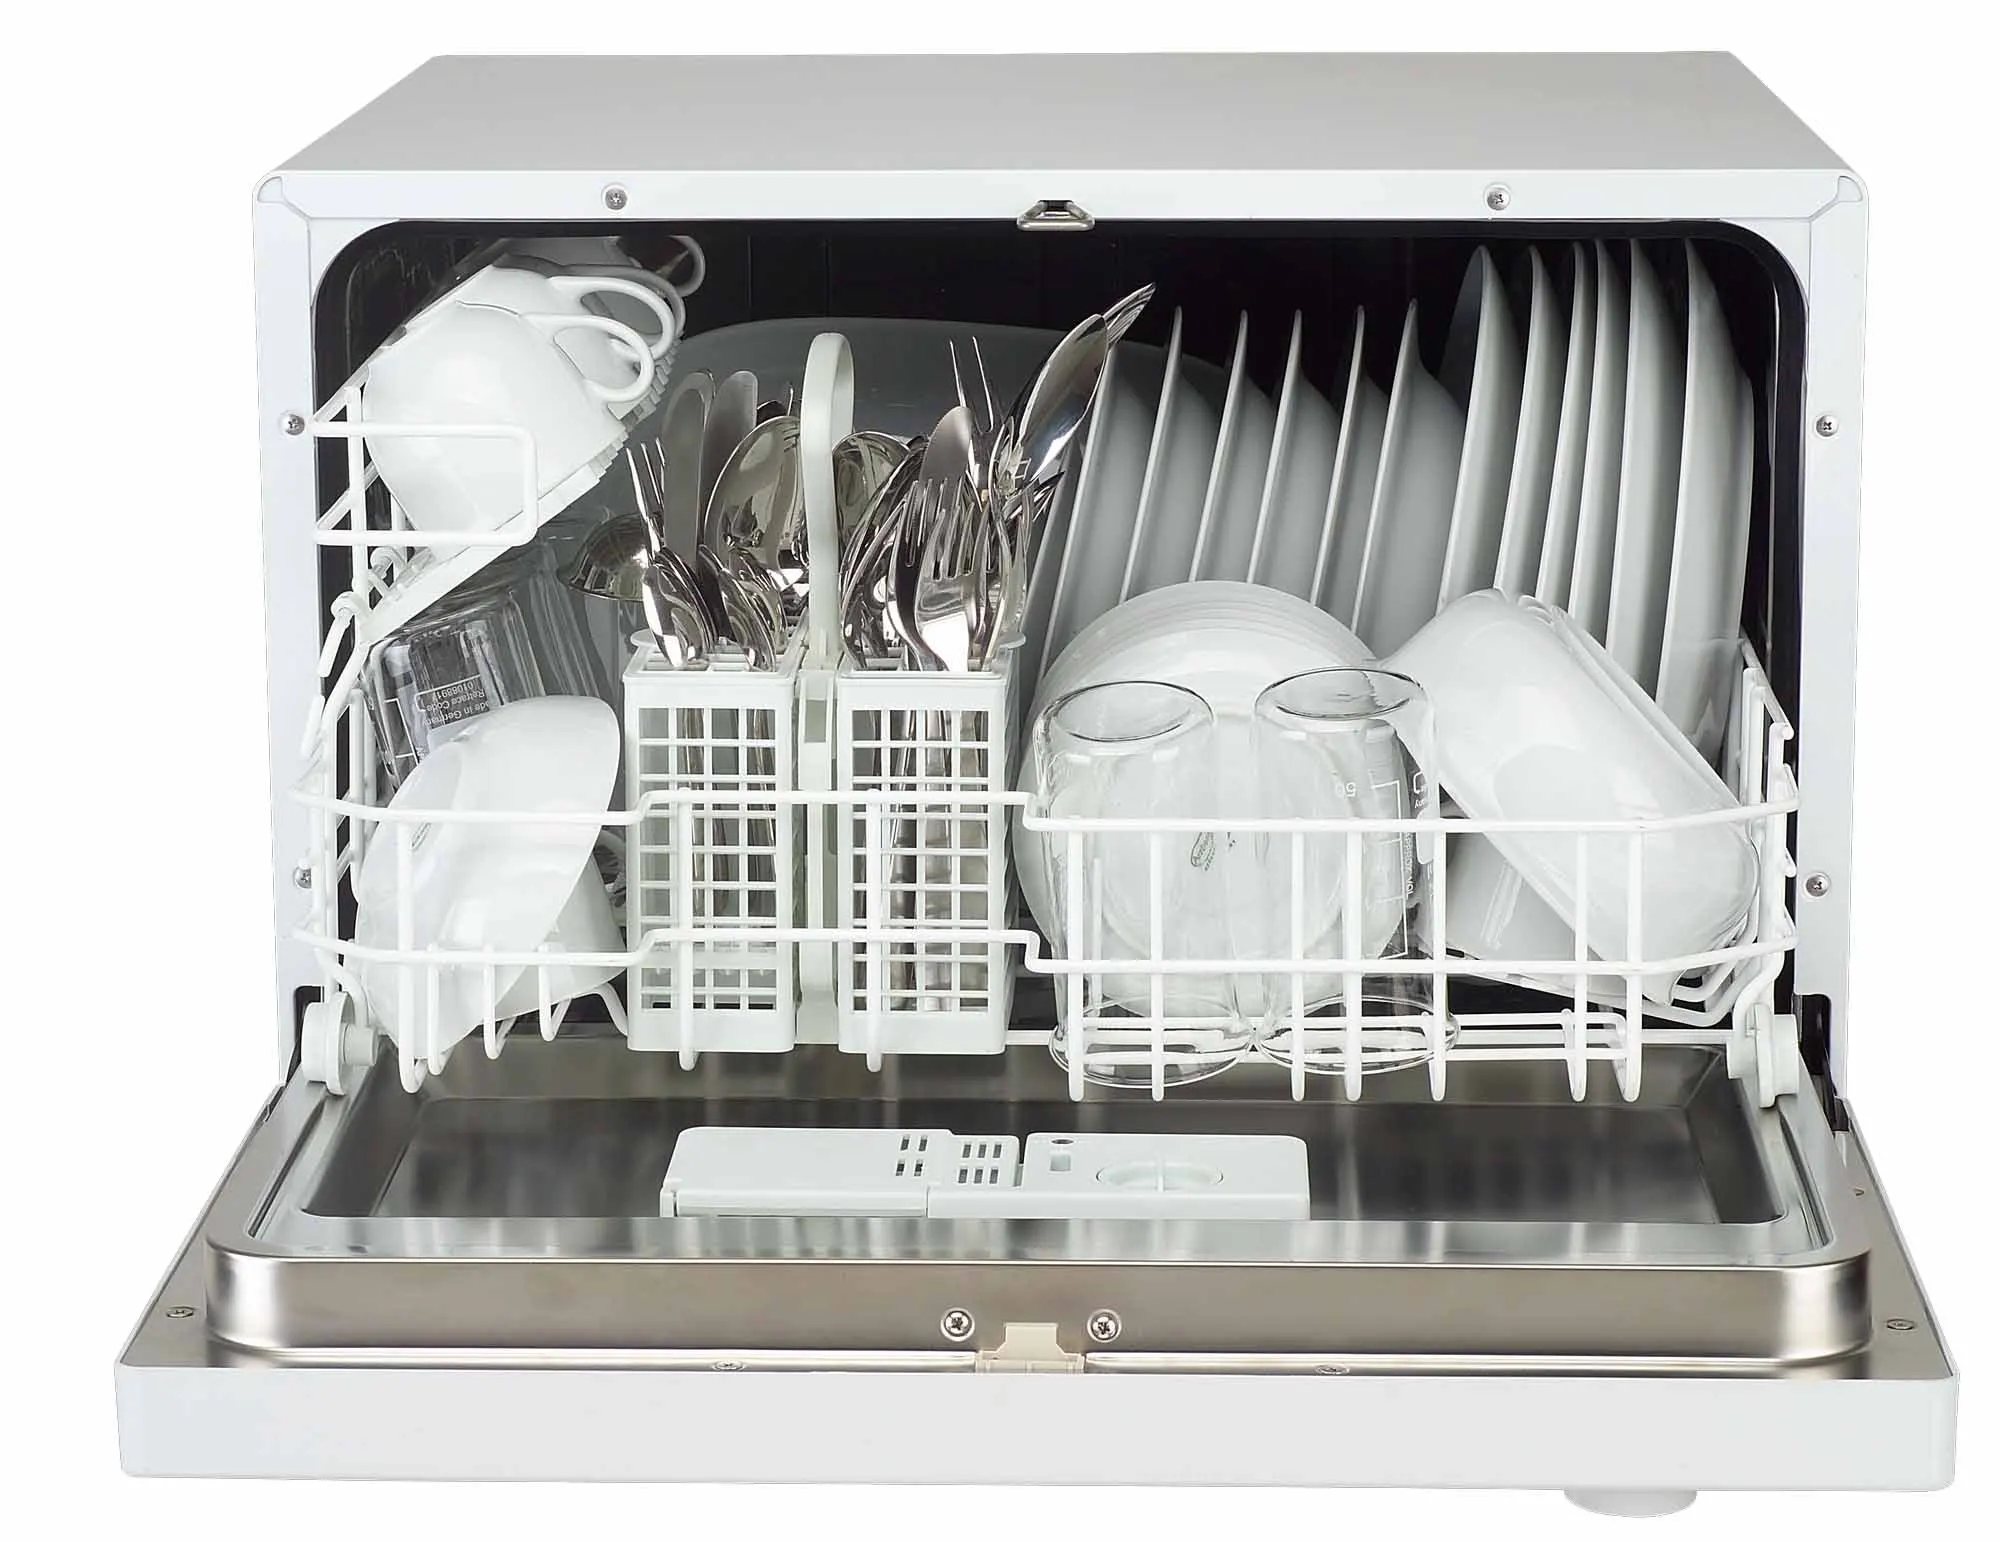 Небольшая посудомоечная машина. Weissgauff 4006 посудомоечная машина. Посудомоечная машина бош SKT 5102 eu. Компактная посудомоечная машина Candy.